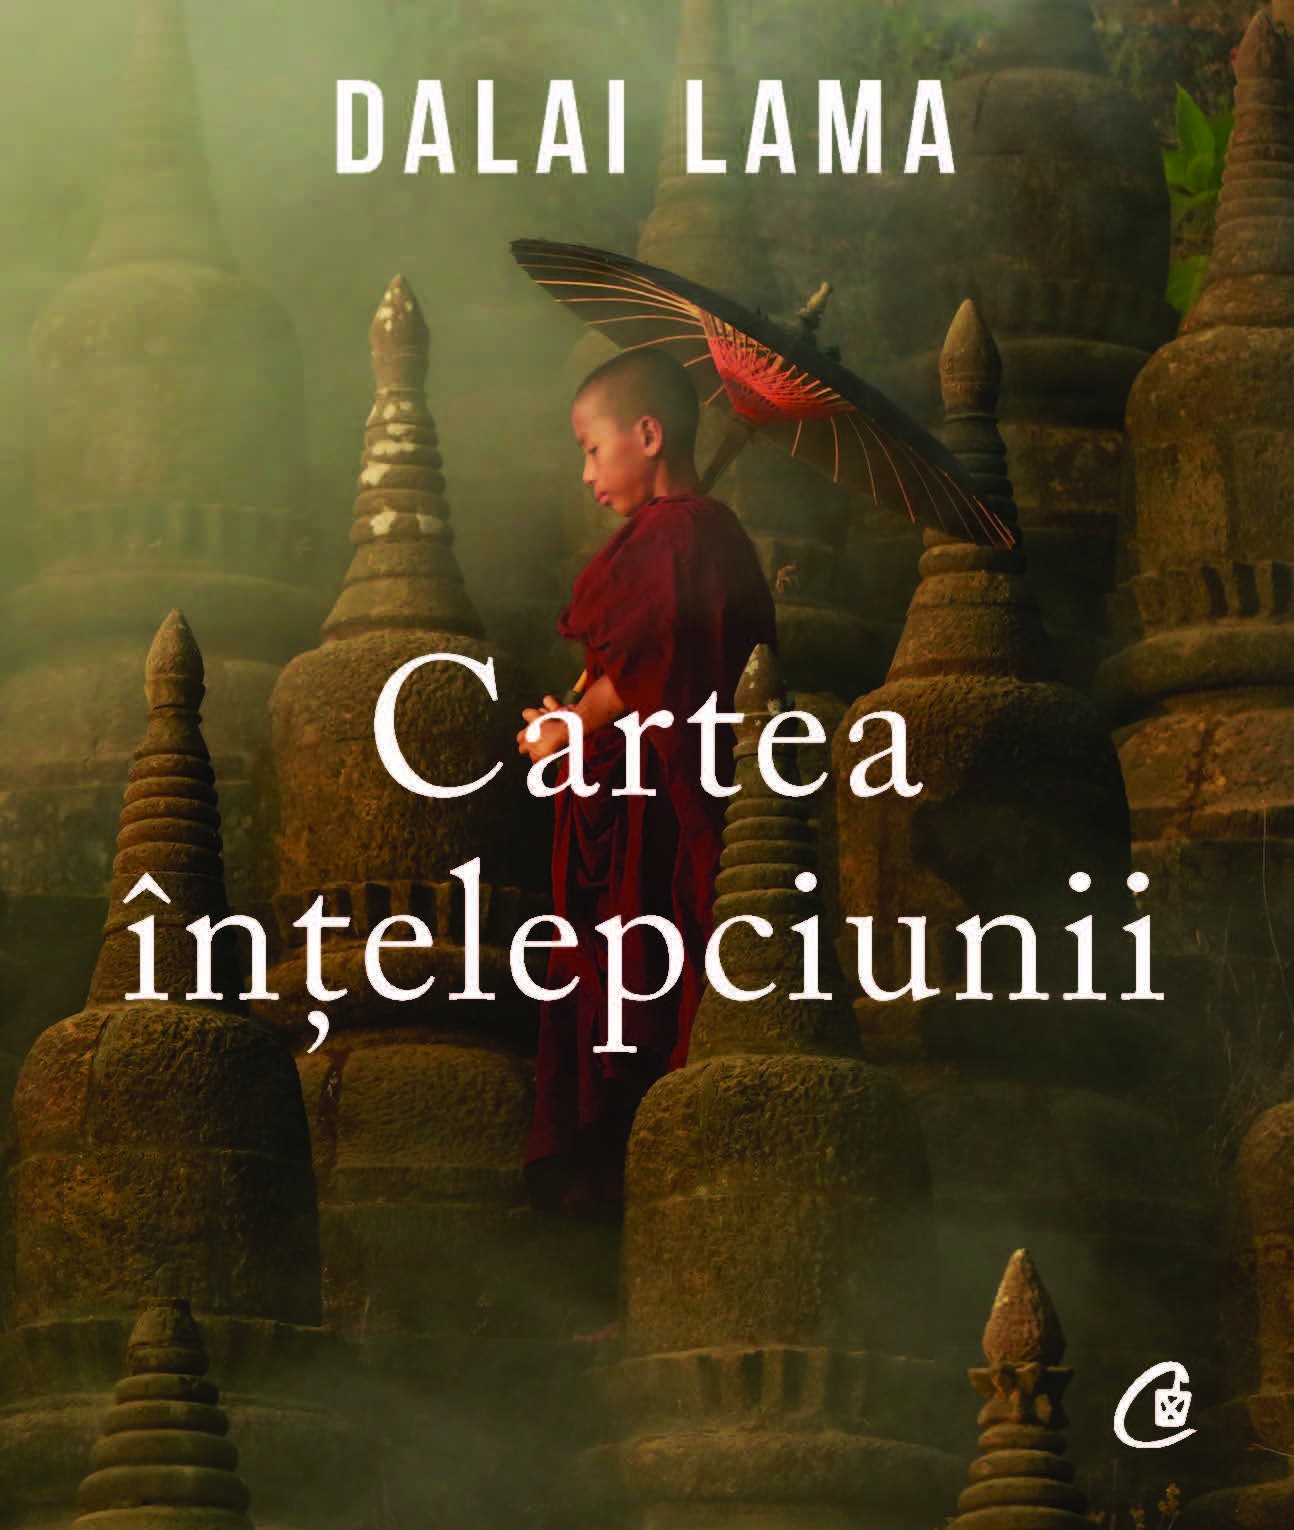 Cartea intelepciunii - Dalai Lama